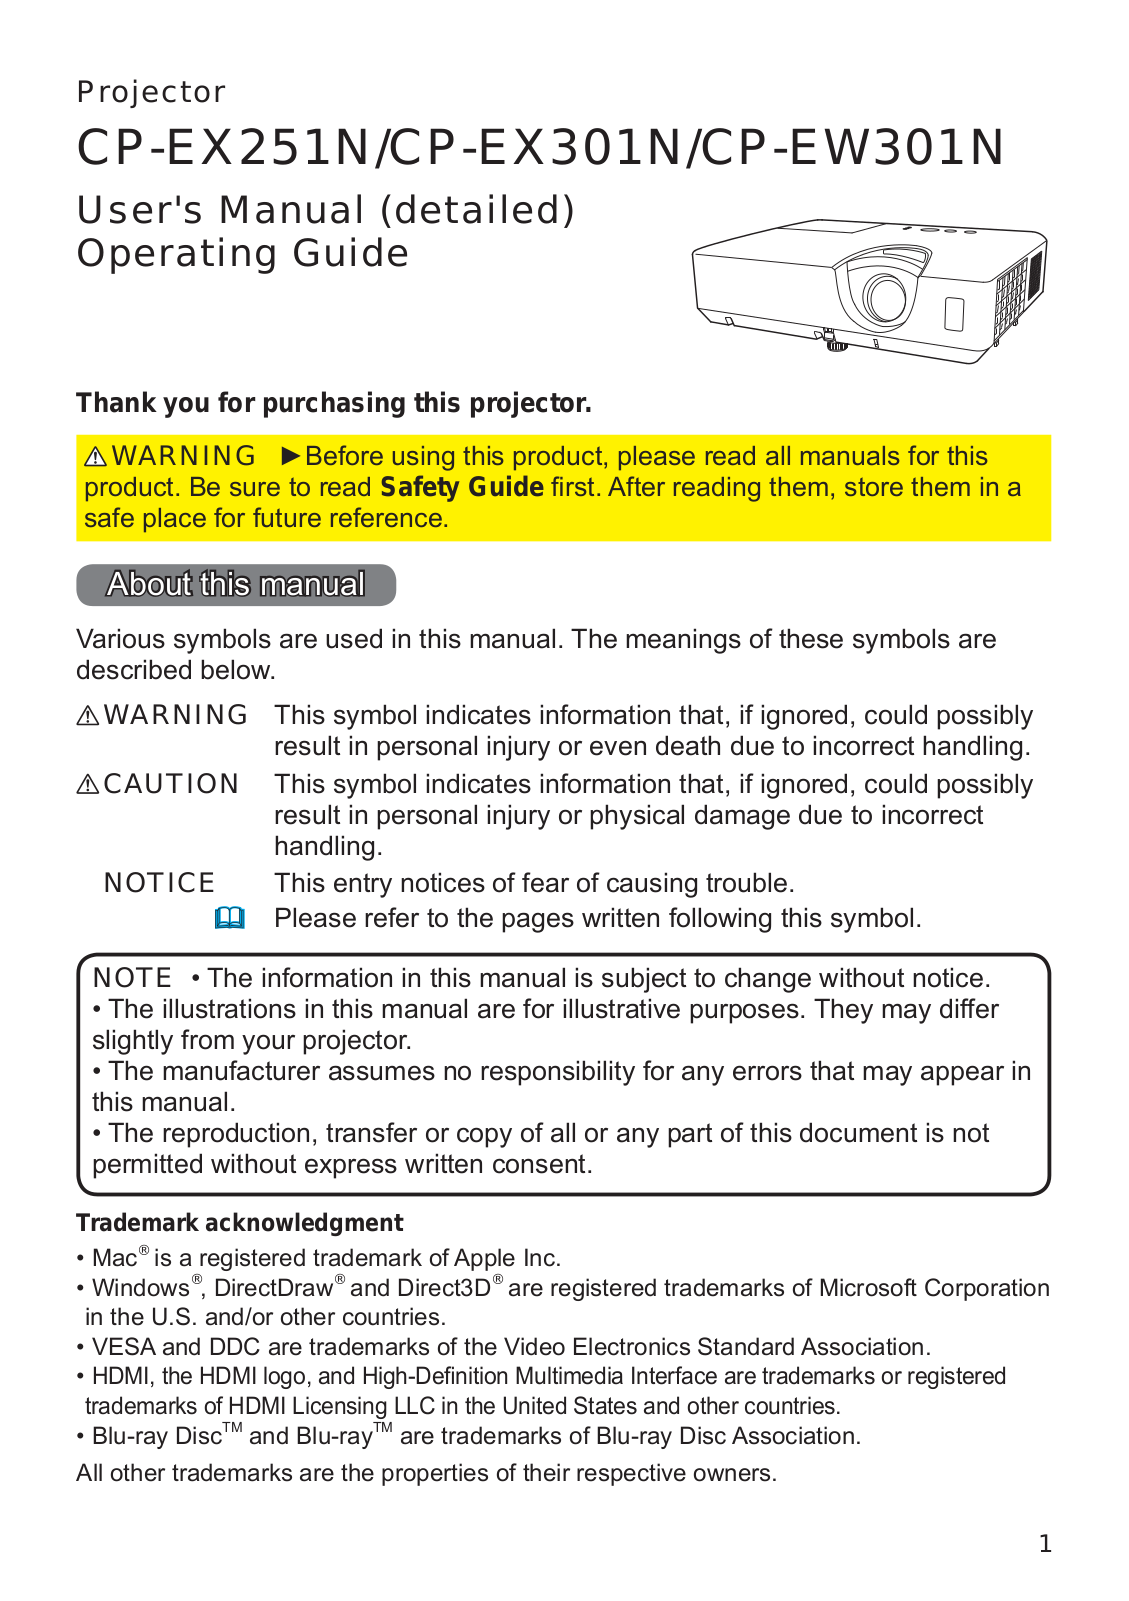 Hitachi CP-EX251N, CP-EW301N User Manual